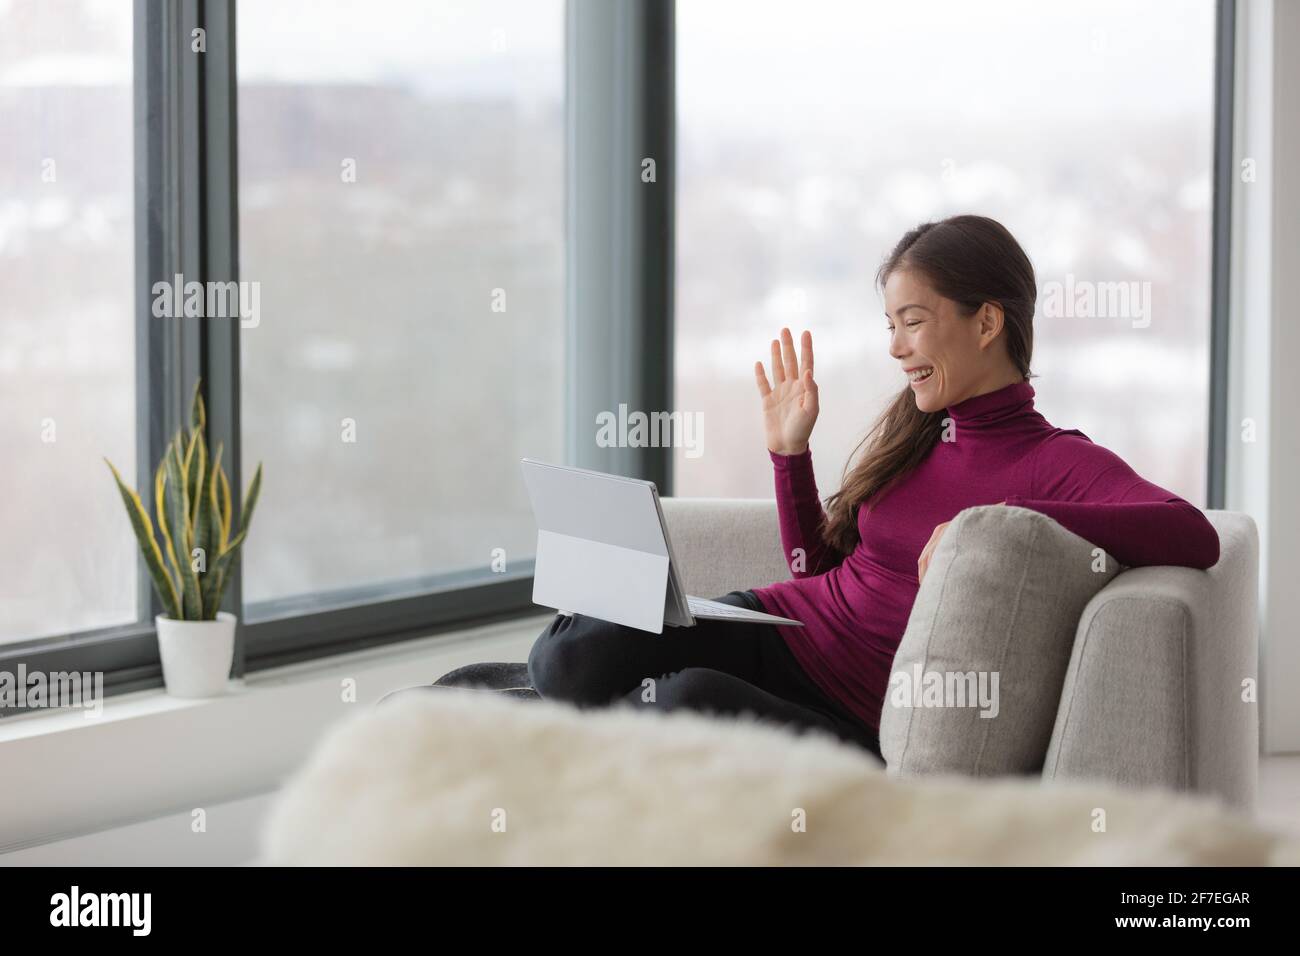 Travail à domicile une femme asiatique heureuse travaillant à distance sur un ordinateur portable l'ordinateur fait la connaissance de vos collègues sur le travail d'équipe de vidéocall pendant le verrouillage du coronavirus Banque D'Images